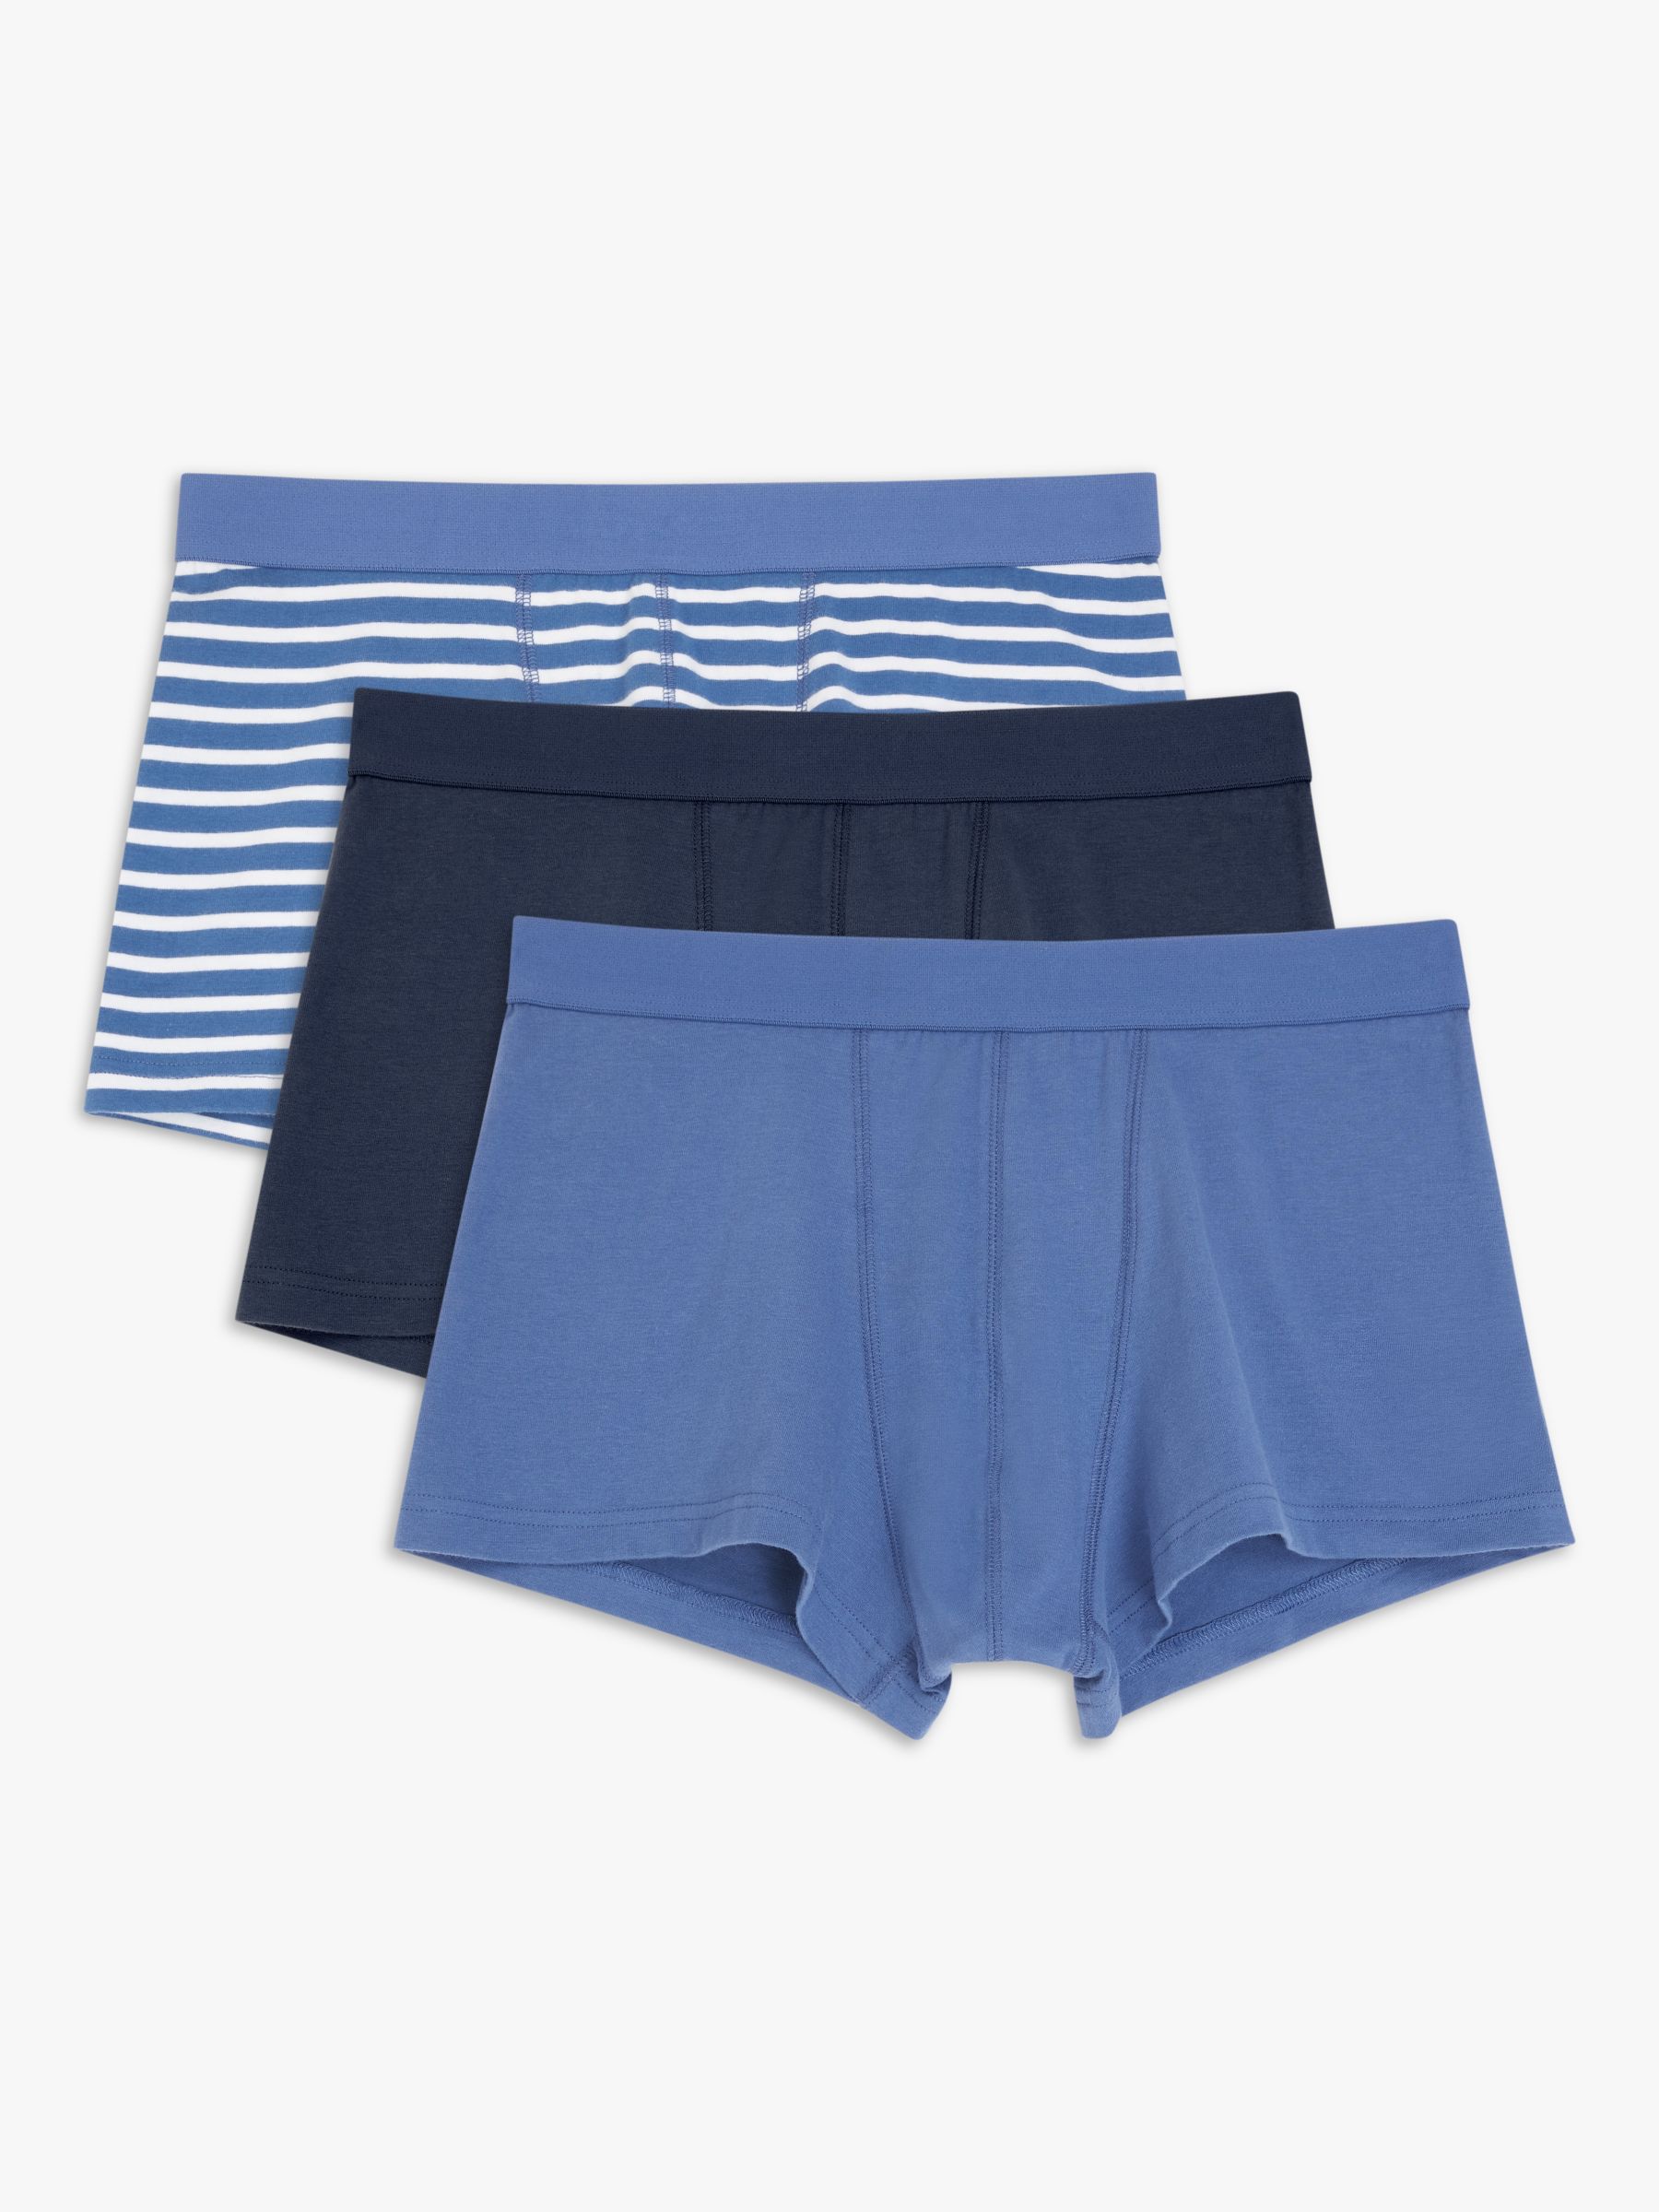 Frenchie Underwear: Get 𝐔𝐩𝐭𝐨 𝟒𝟎% 𝐎𝐟𝐟 on Mens Underwear